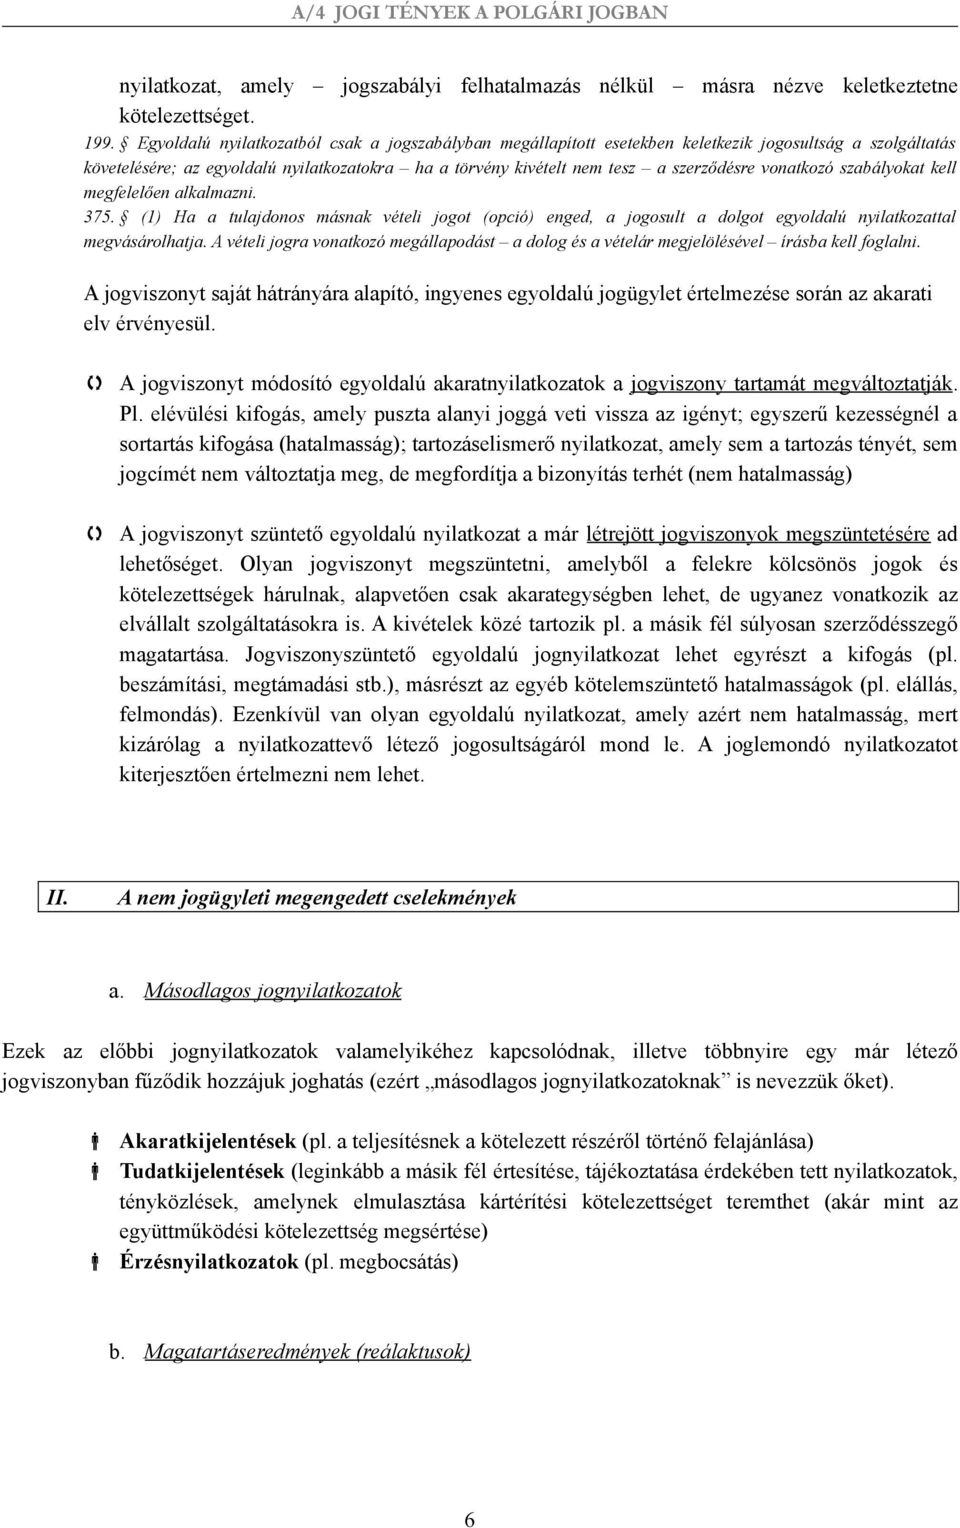 A szerződésmódosítás kérdésköre a magyar polgári jogban